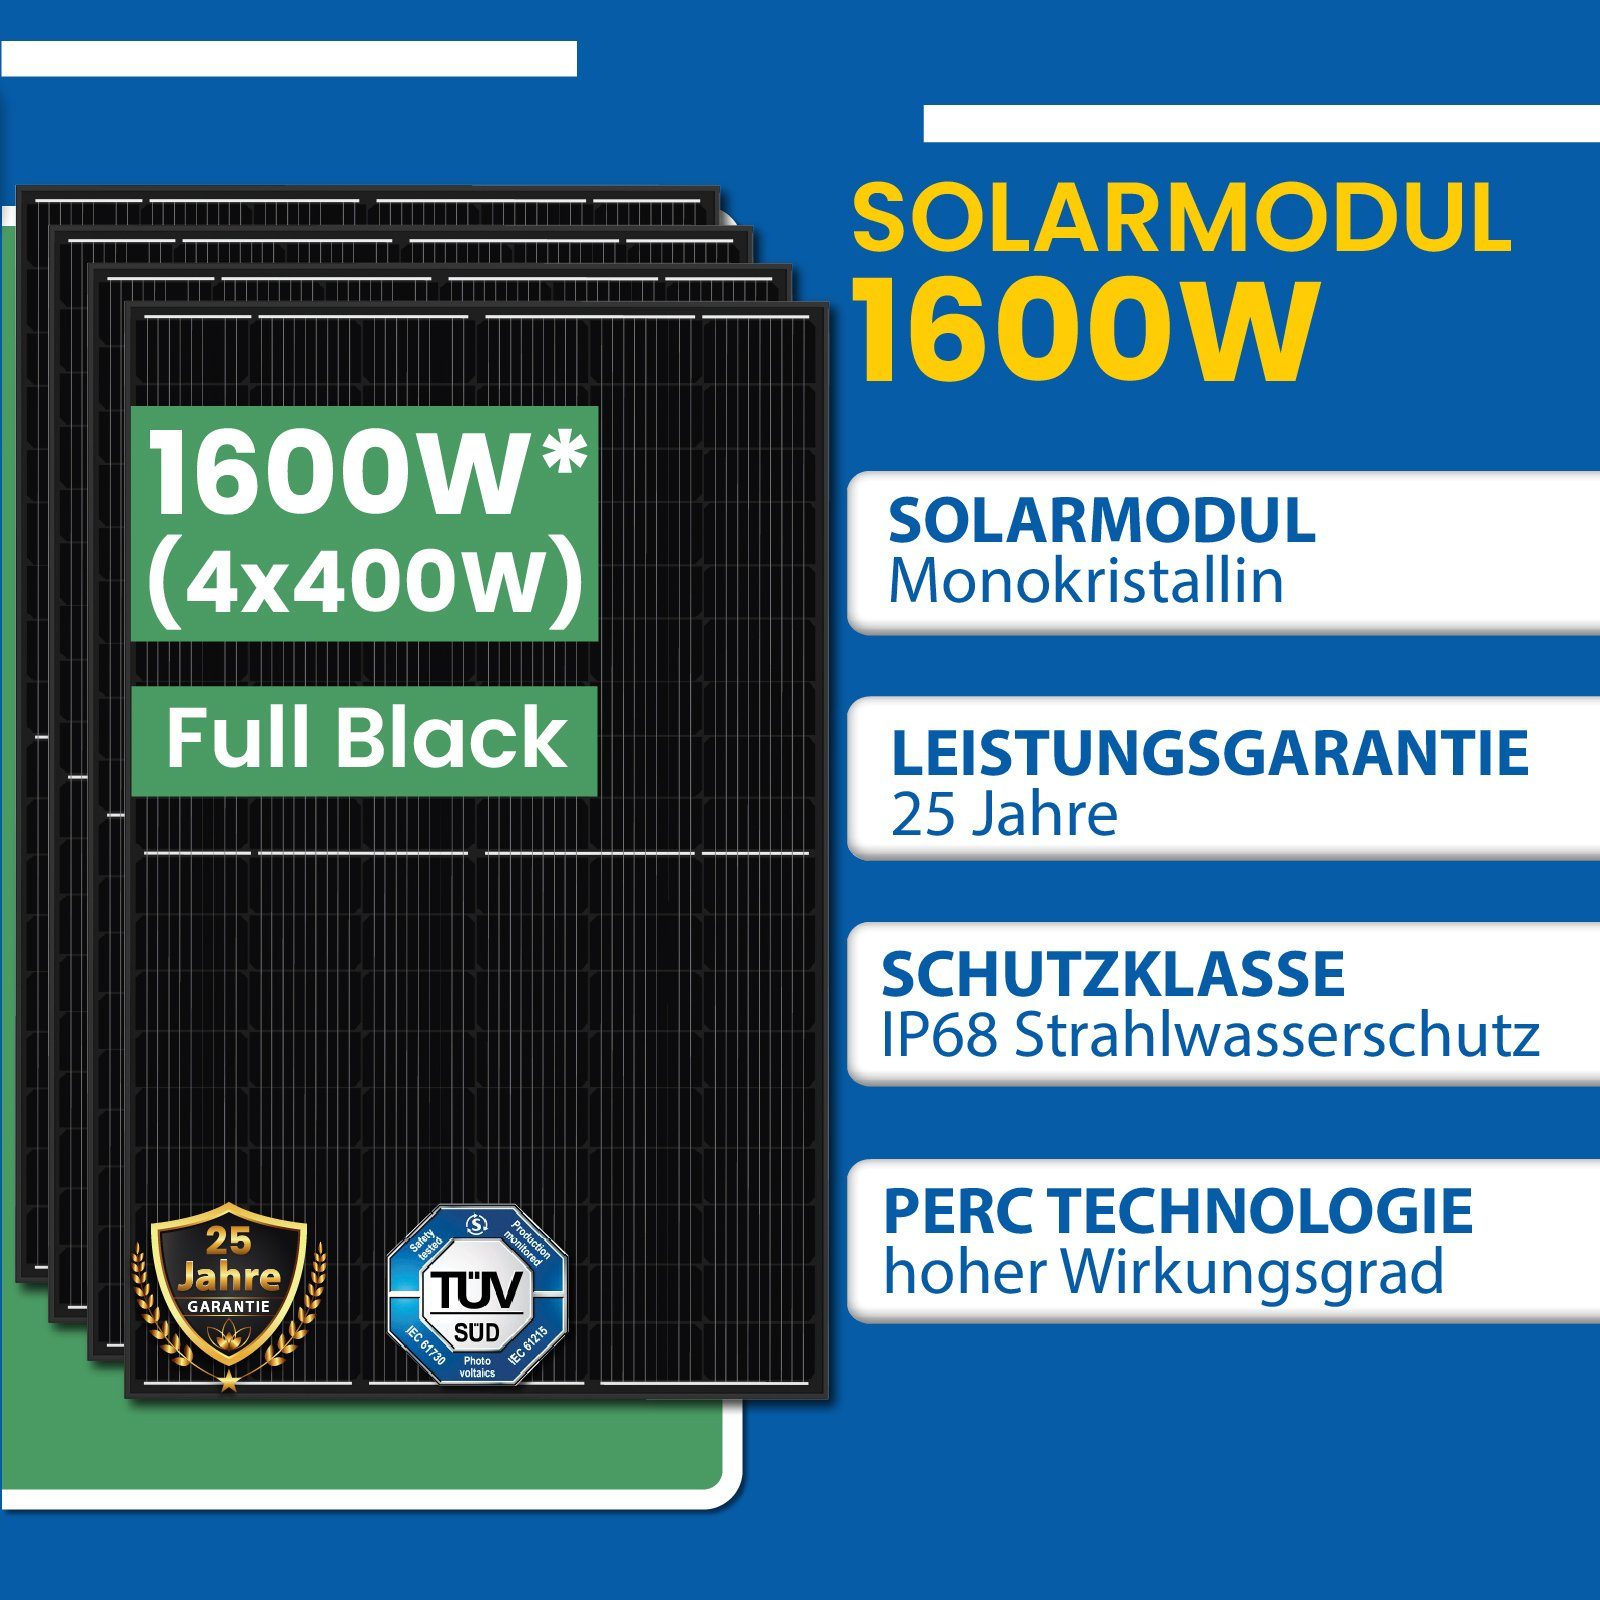 EPP.Solar Solaranlage Balkongeländer Photovoltaik 1600W HMS-1600-4T mit Hoymiles Wechselrichter, Eckig DTU-WLite-S) Balkonkraftwerk, (4x (PV-Montage 400W)